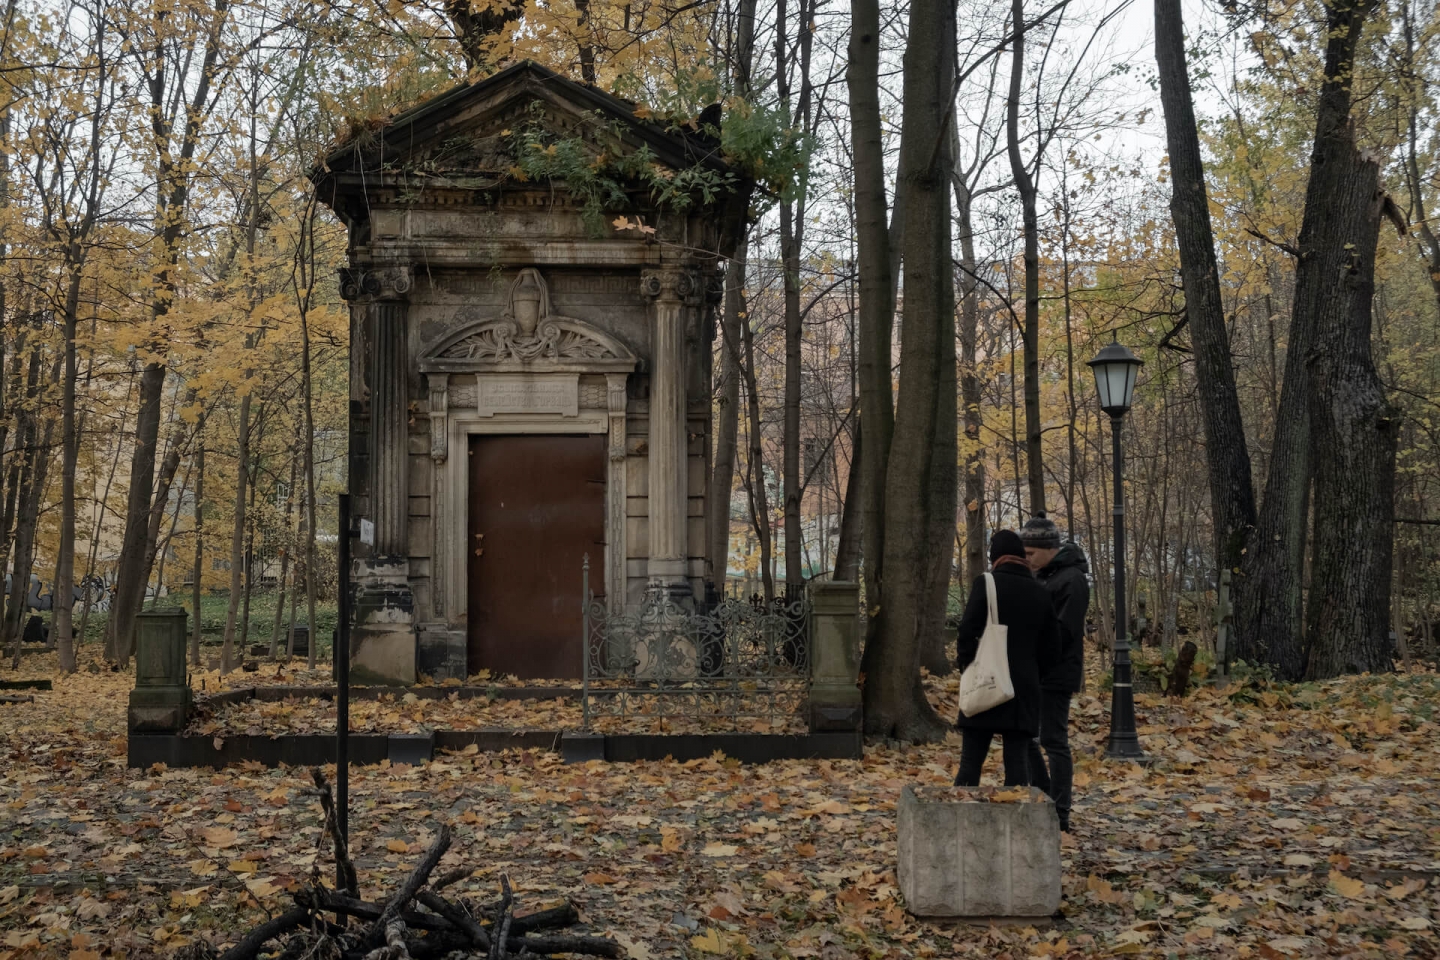 смоленское кладбище в санкт петербурге вход